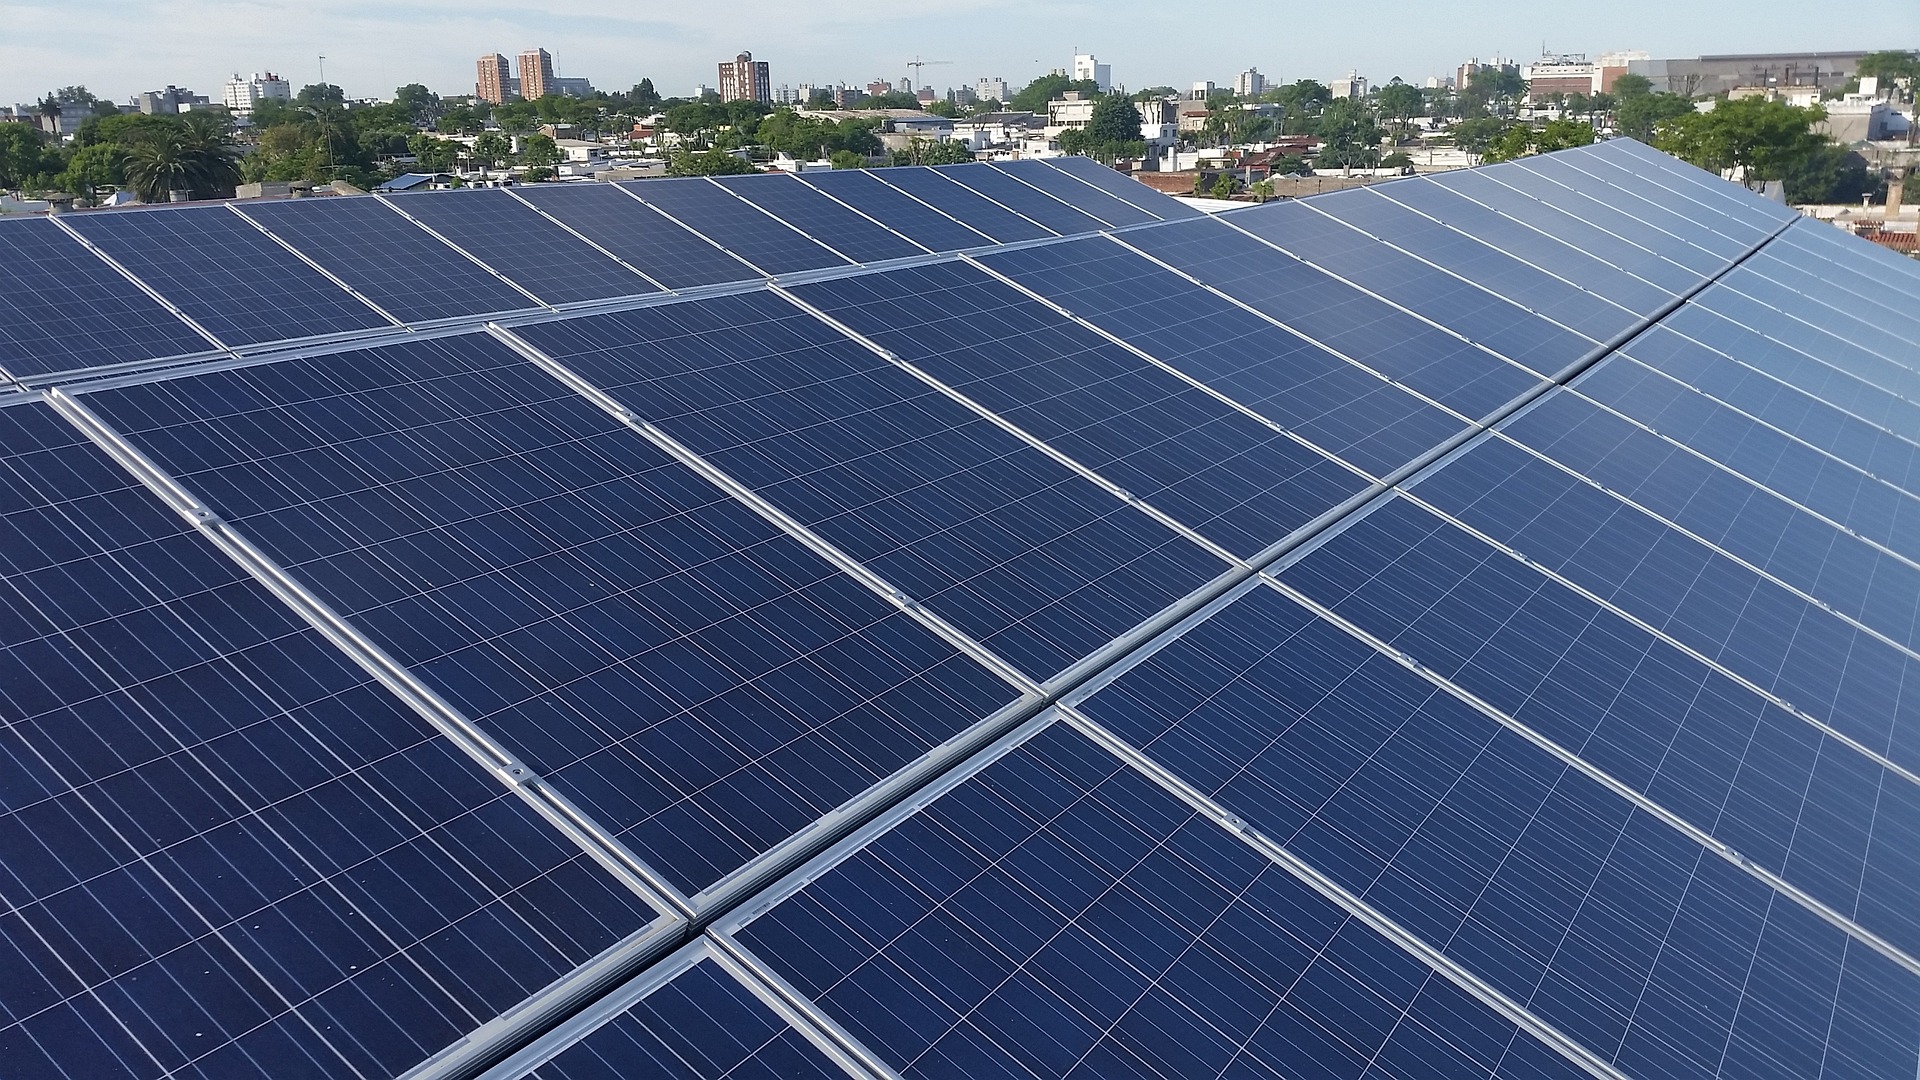 Solaranlagen auf Däcern bilden einen wichtigen Bestandteil des Klimaschutzes in der Stadt